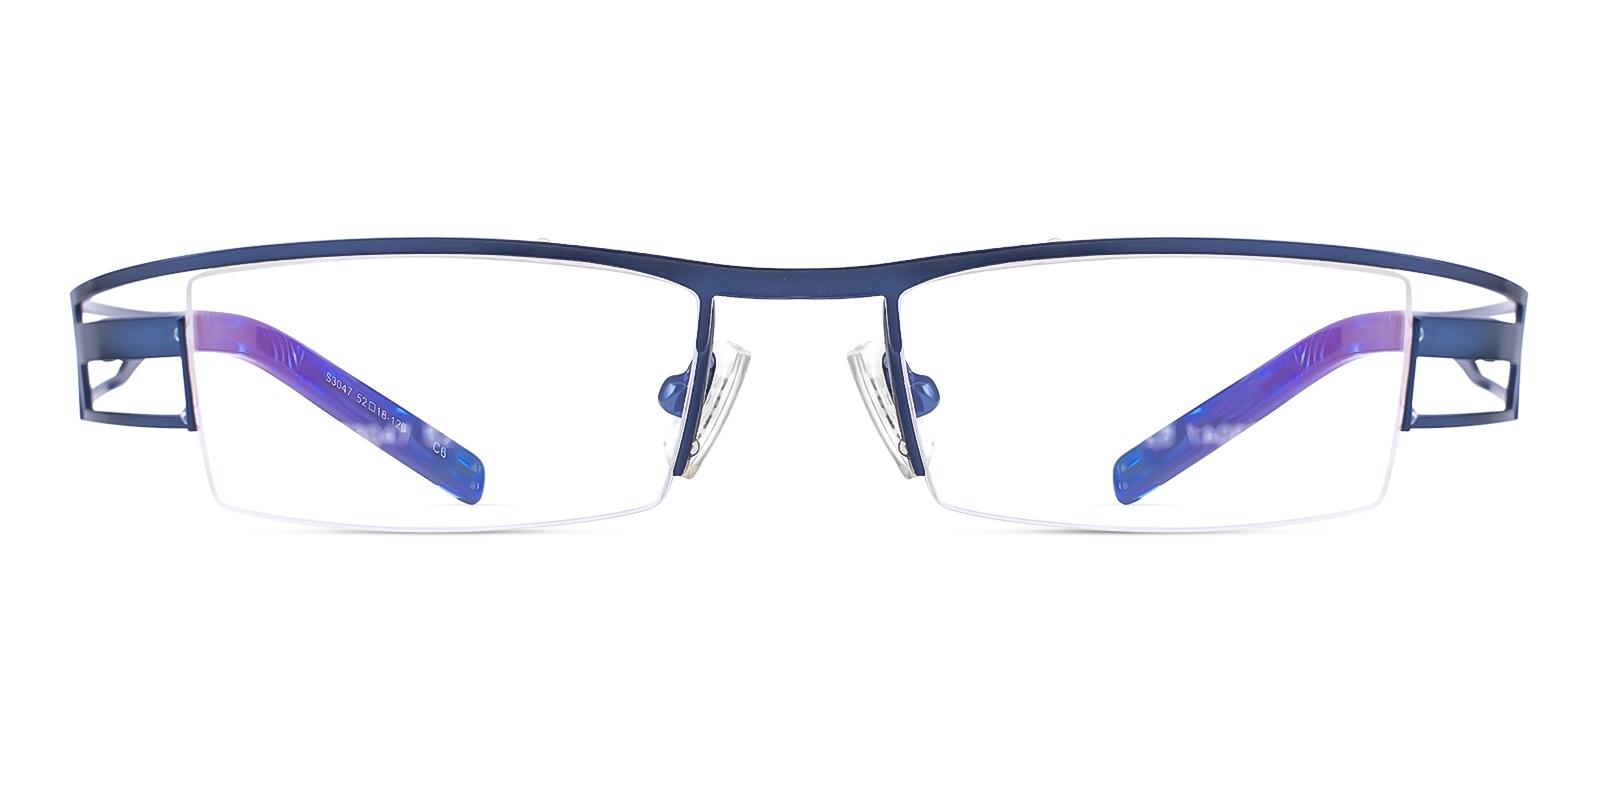 Artics Blue Metal Eyeglasses , NosePads , SportsGlasses Frames from ABBE Glasses